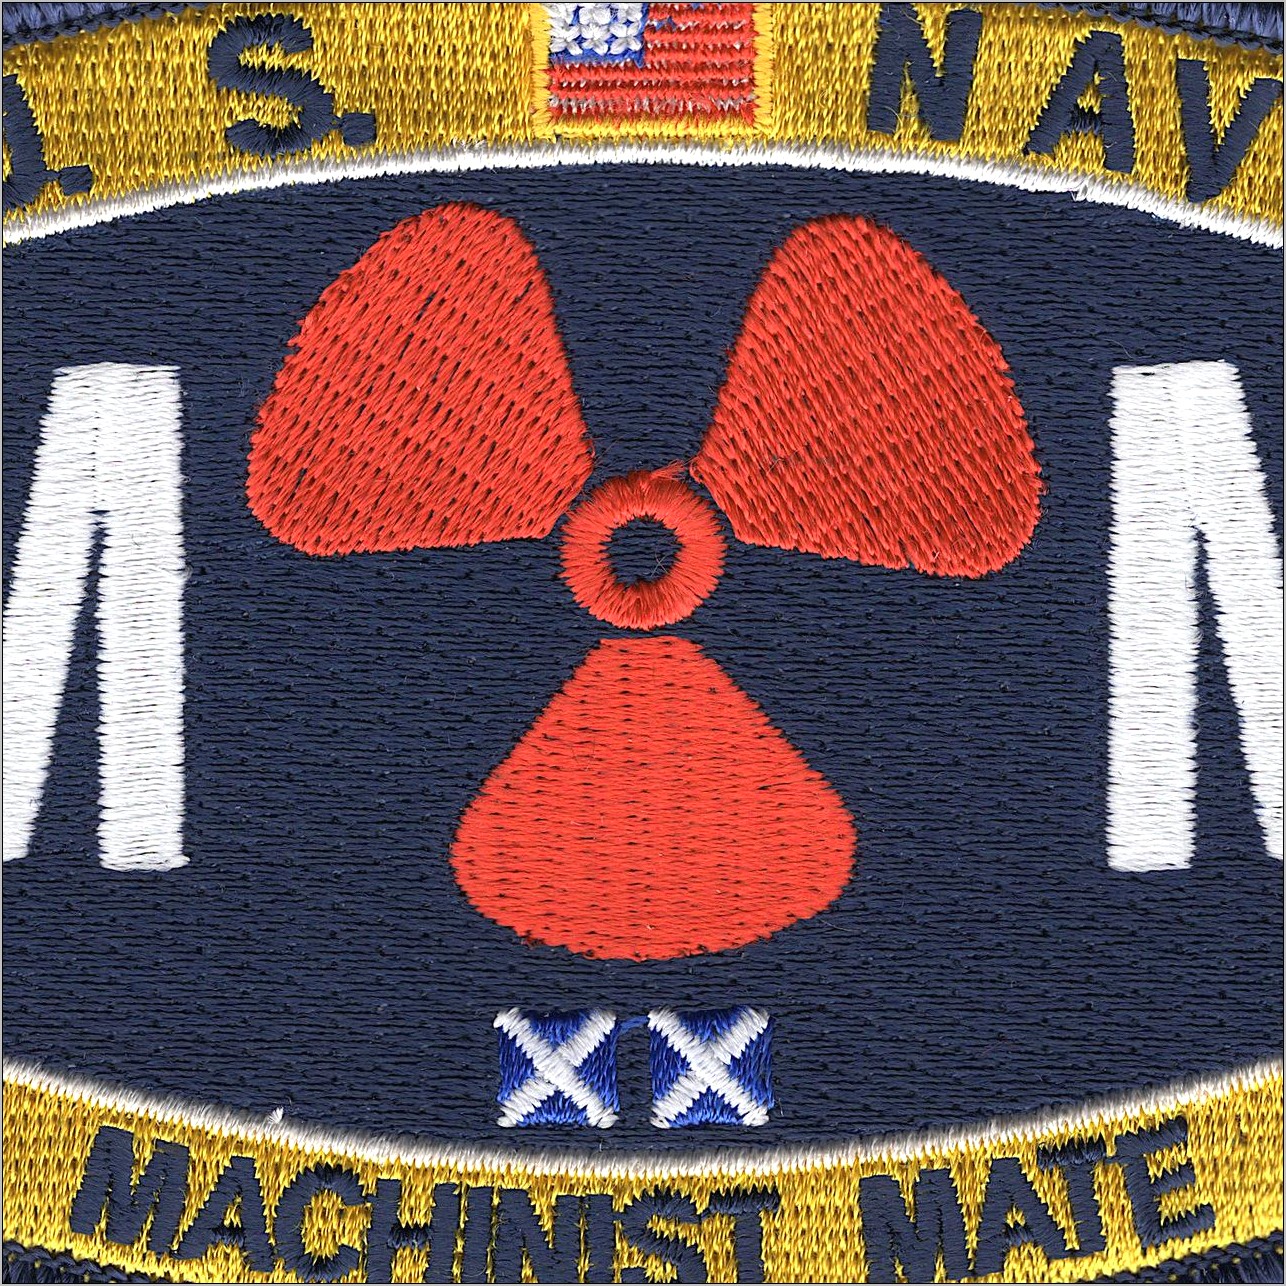 Navy Machinist Mate Sample Resume